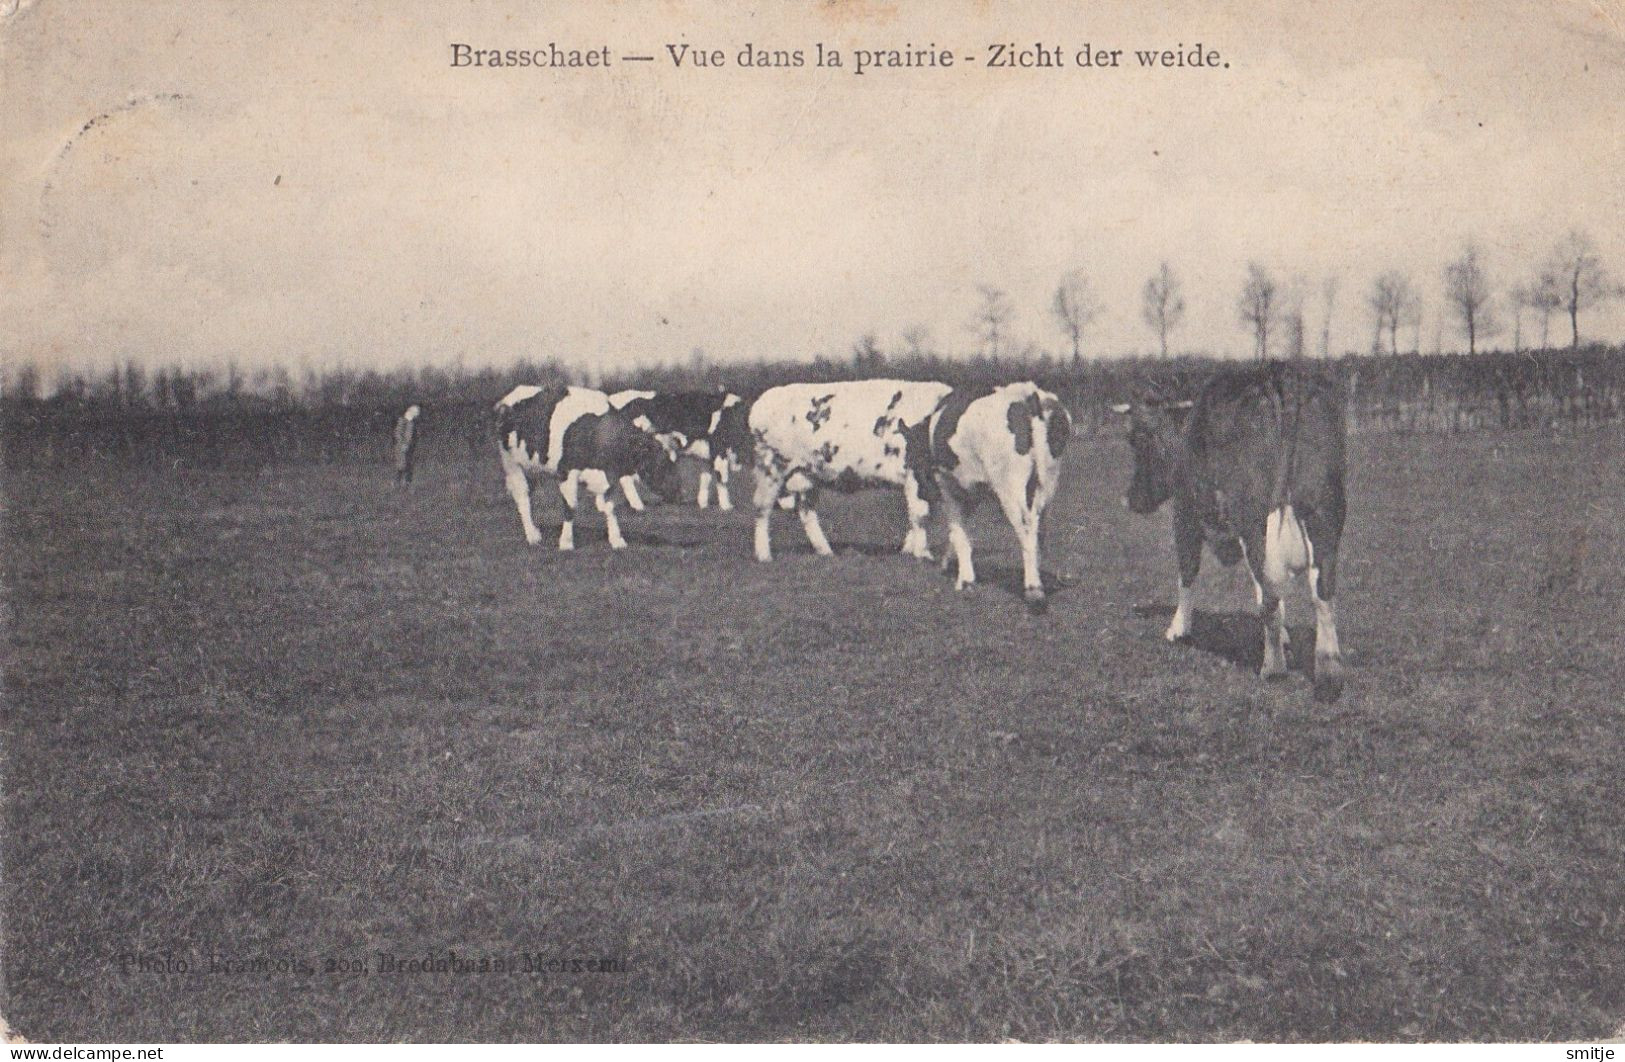 BRASSCHAAT 1908 VUE DANS LA PRAIRIE - VEE KOEIEN IN DE WEIDE - FRANCOIS MERKSEM - Brasschaat